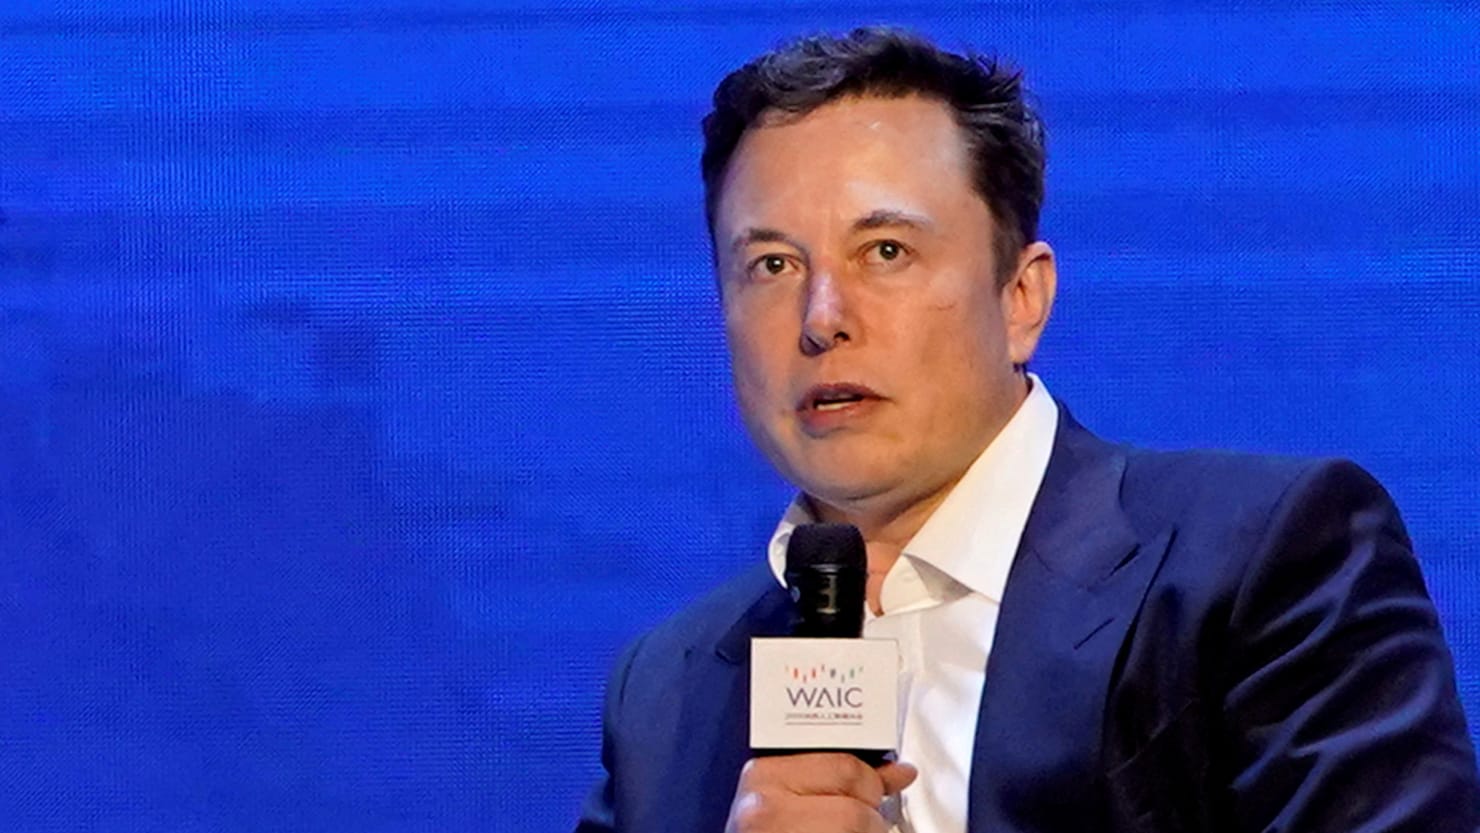 Elon Musk Backs Out for ‘Legacy Checkmark’ Cleanup, Platform’s Biggest Celebrities Reaffirm